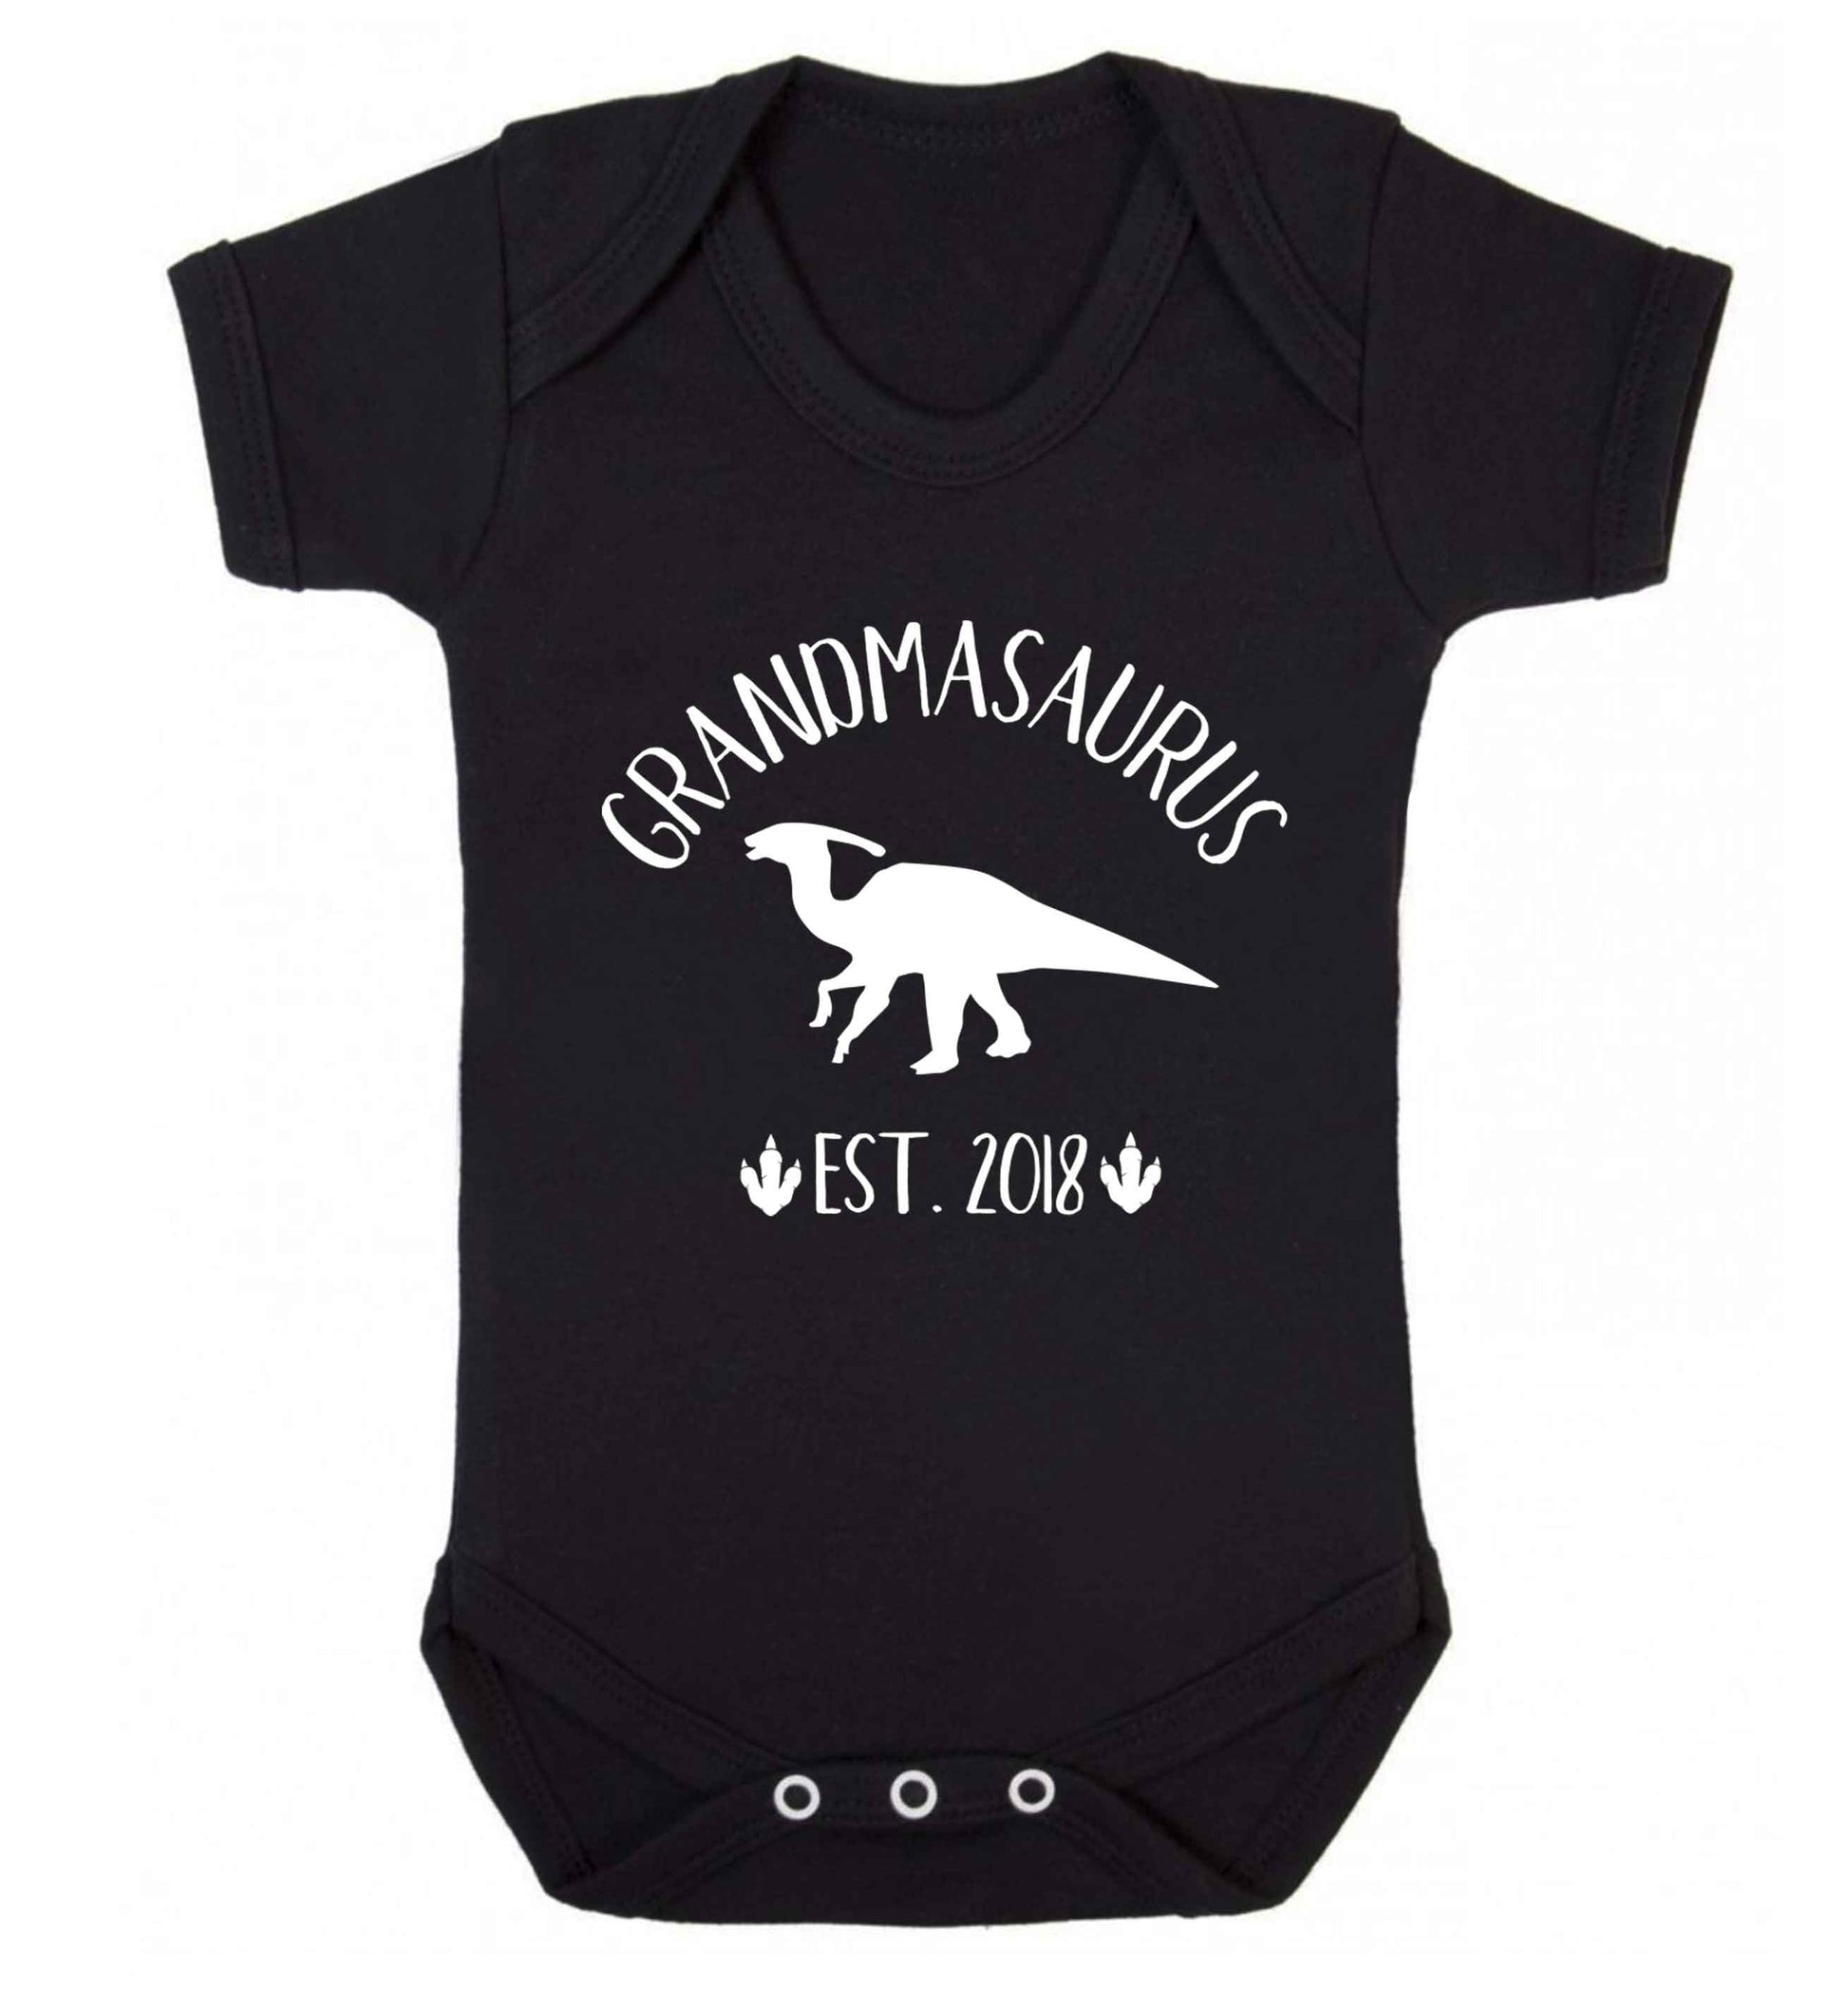 Personalised grandmasaurus since (custom date) Baby Vest black 18-24 months